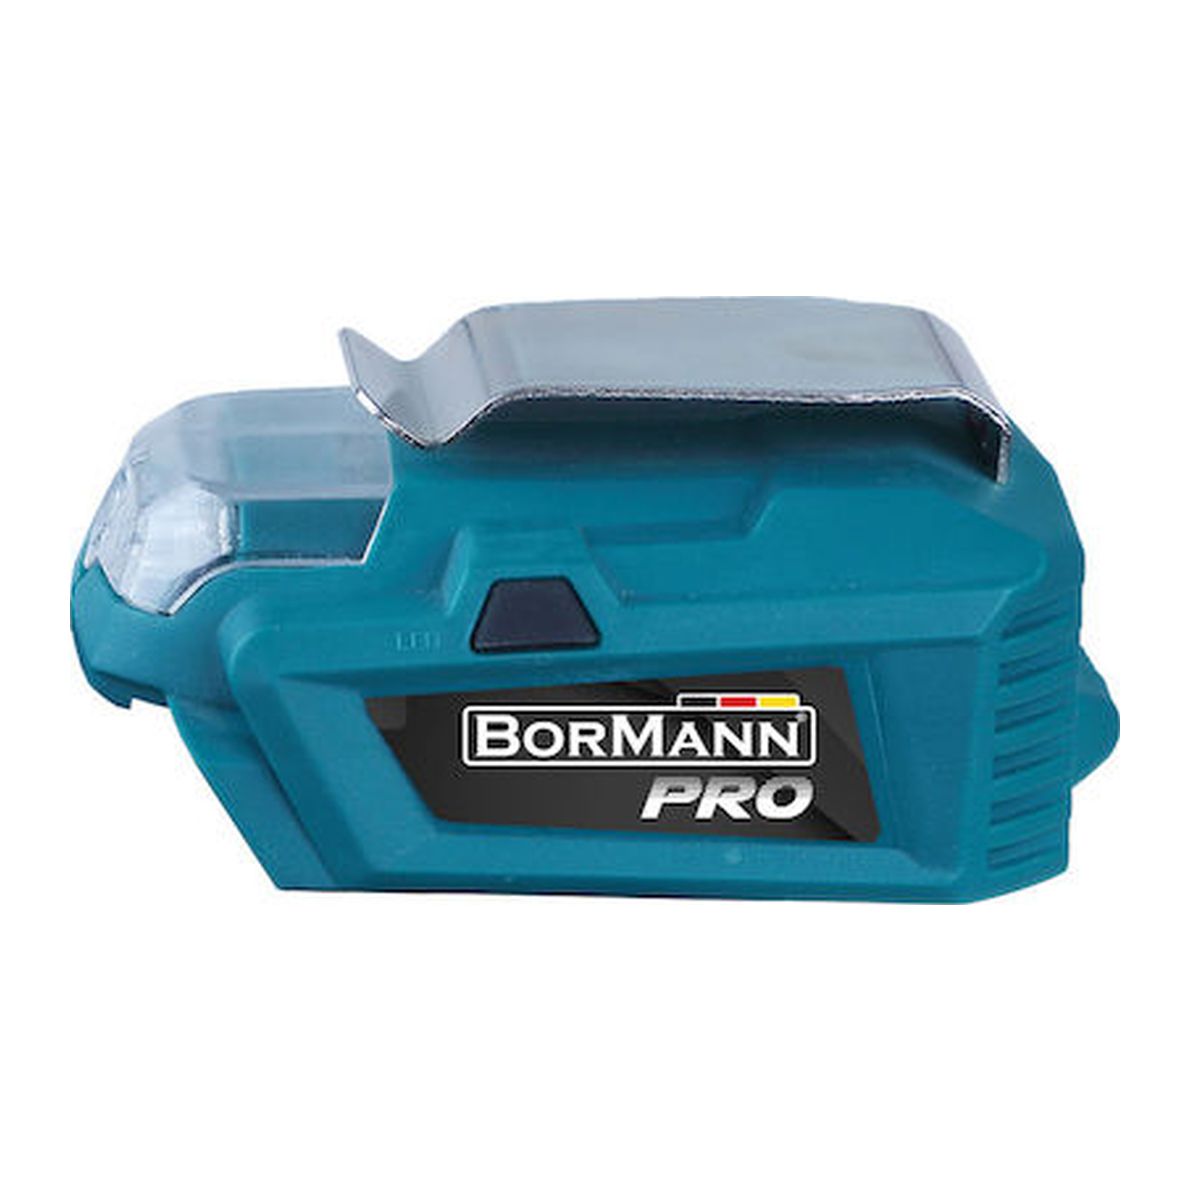 Power Bank USB - Φακός 2 σε 1 Μπαταρίας 20V BBP1010 032779 Bormann Pro